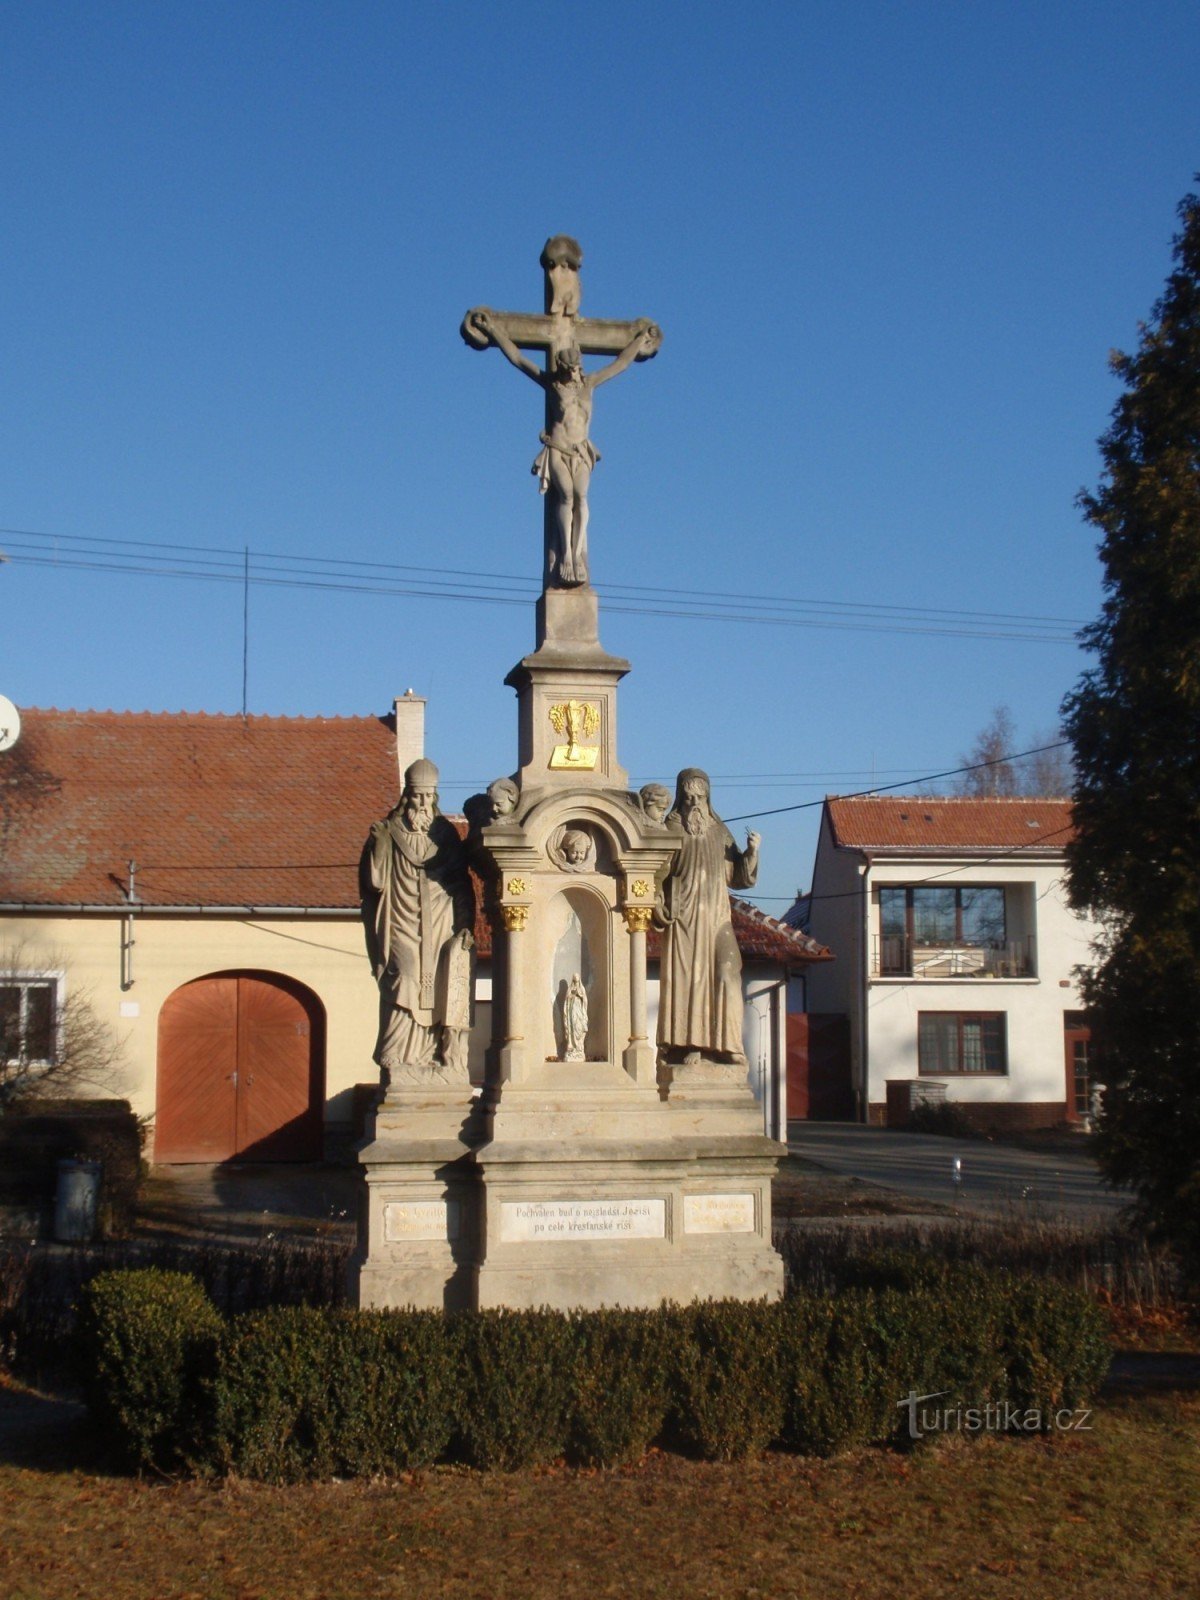 Troubsko - kleine monumenten